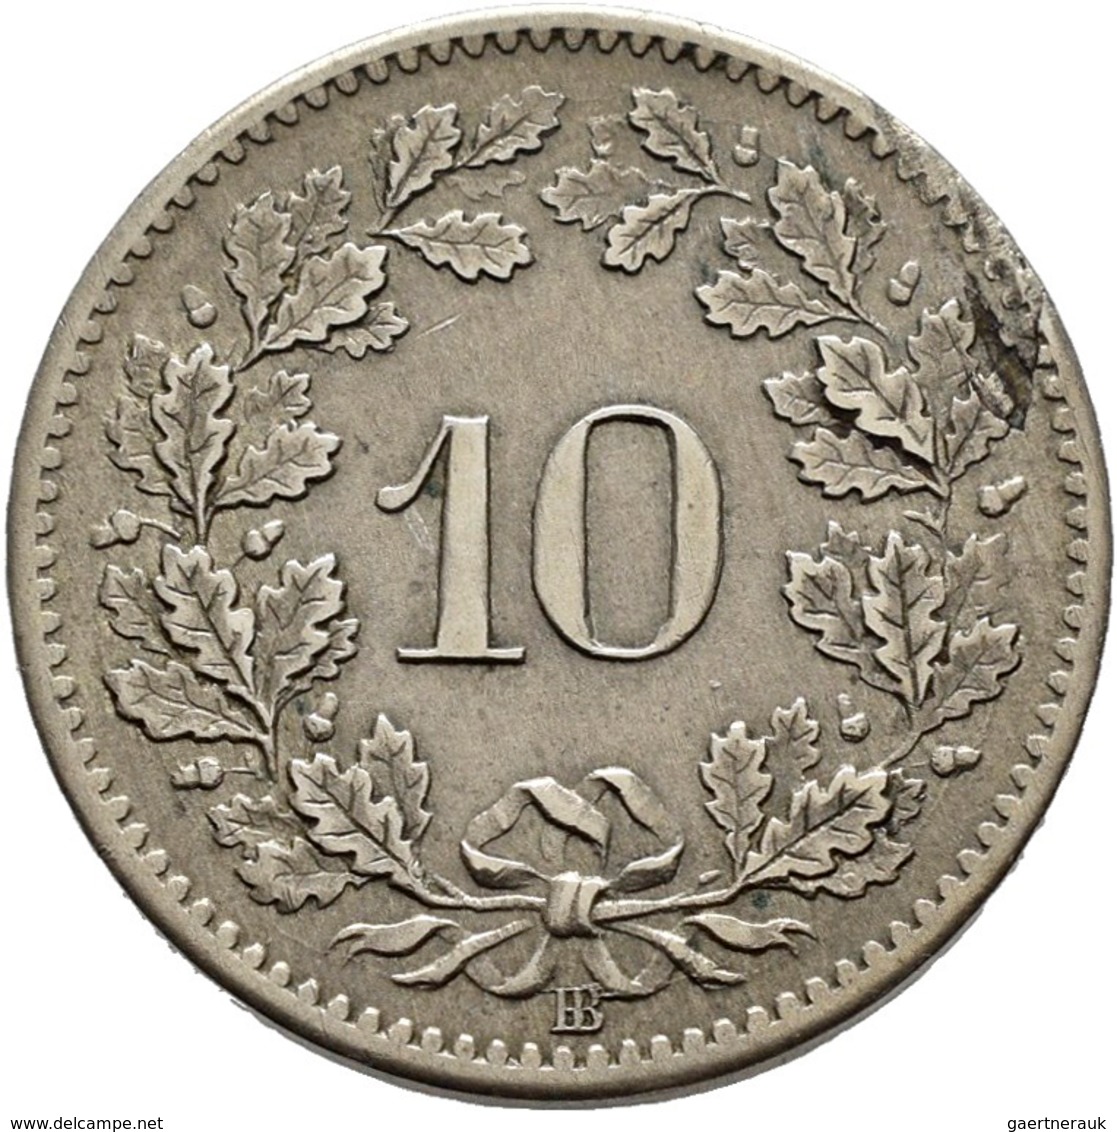 Schweiz: Lot 5 Stück; 2 Franken 1860, 1 Franken 1861, 1/2 Franken 1850, 20 Rappen 1859, 10 Rappen 18